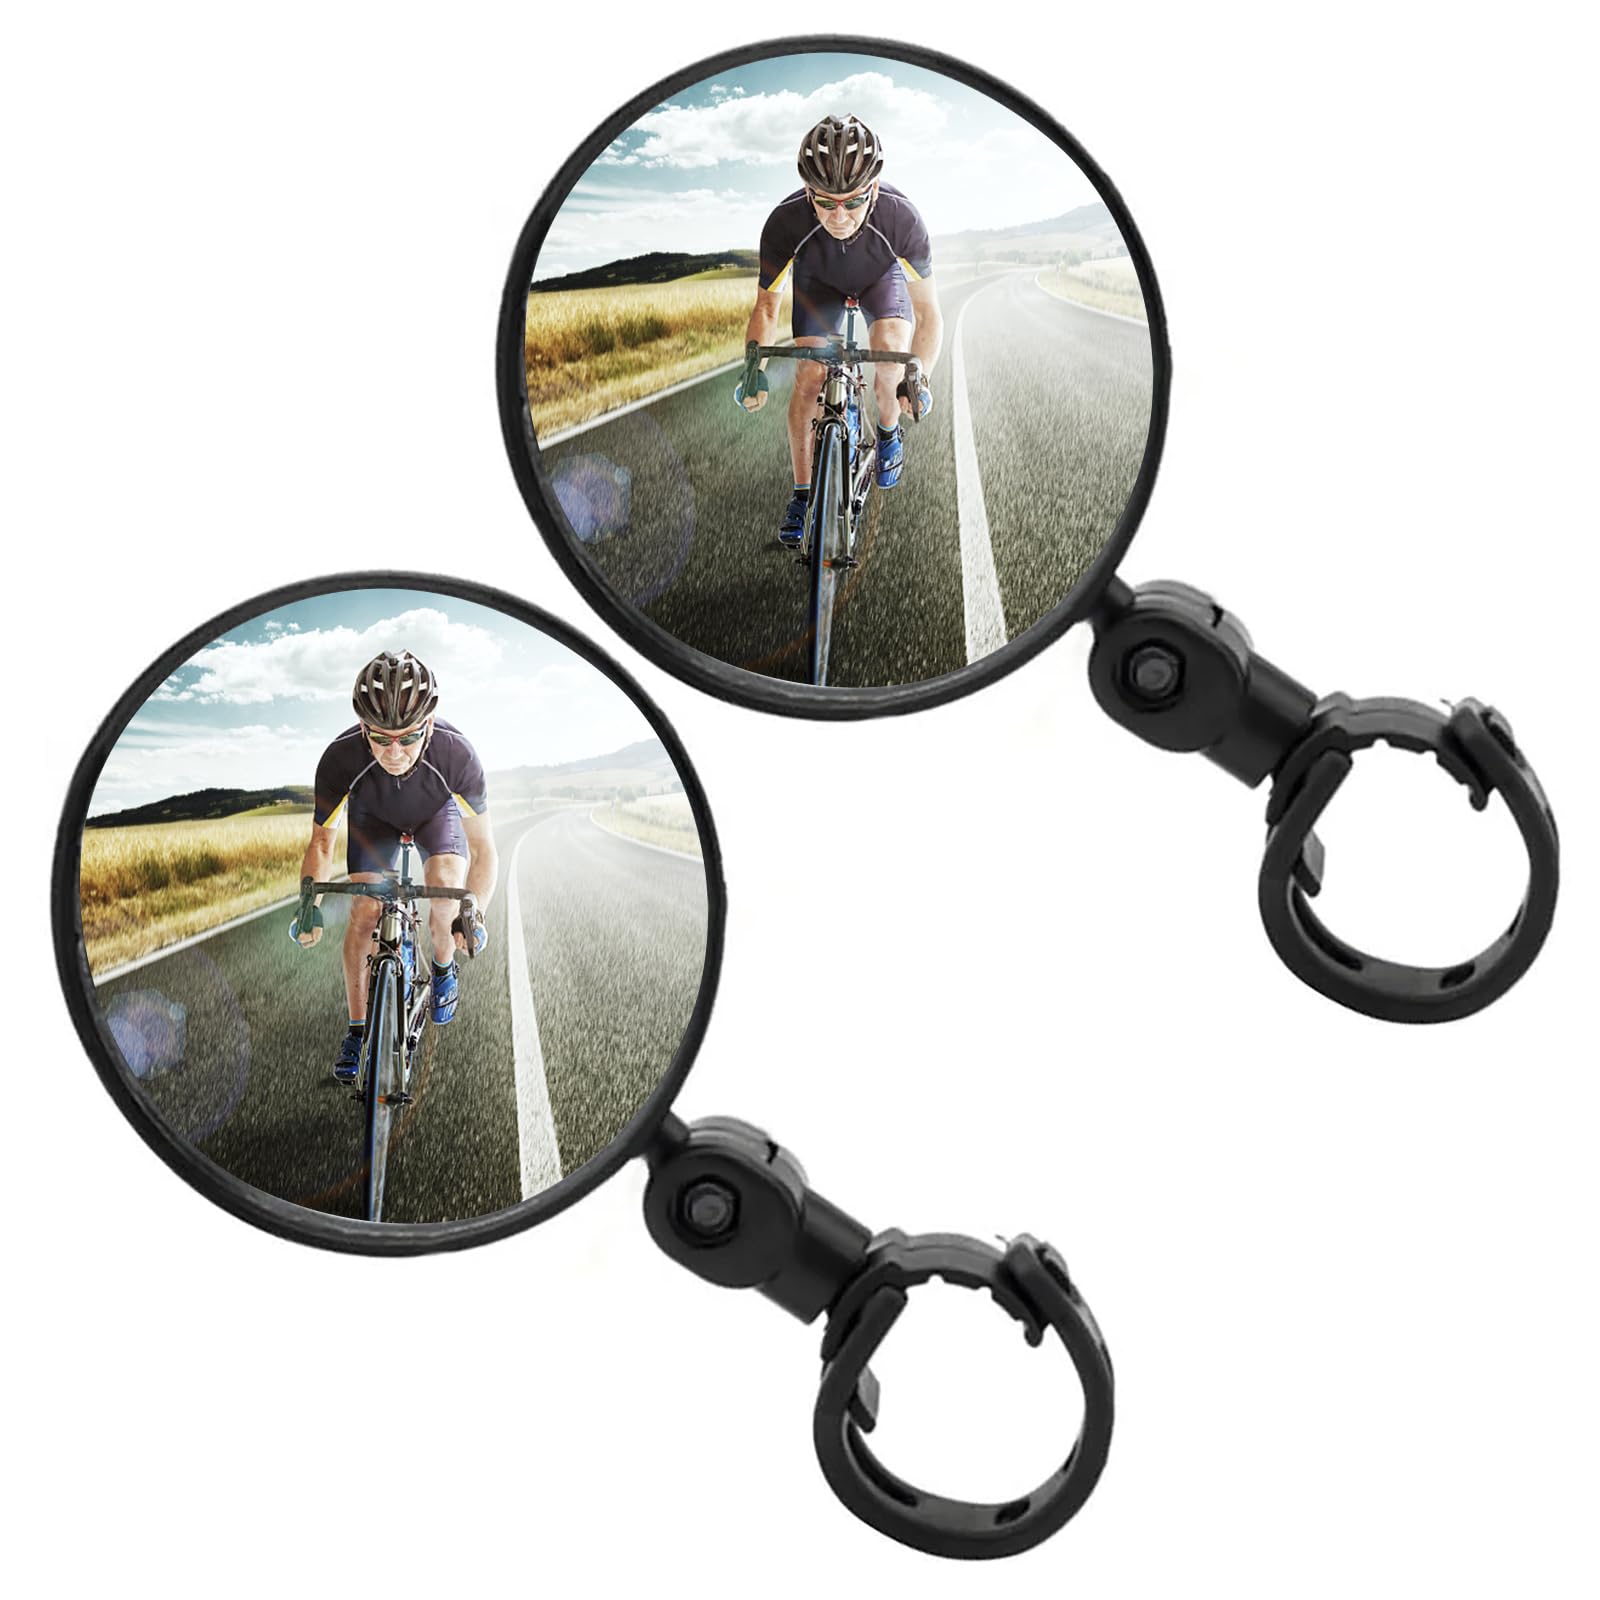 Erdbeerblase 360° drehbarer Fahrradrückspiegel, Weitwinkel Spiegel, Schlagfest, Fahrradspiegel für Mountainbike Rennrad E-Bikes und andere Fahrräder (2×RUNDE SPIEGEL) von Sank